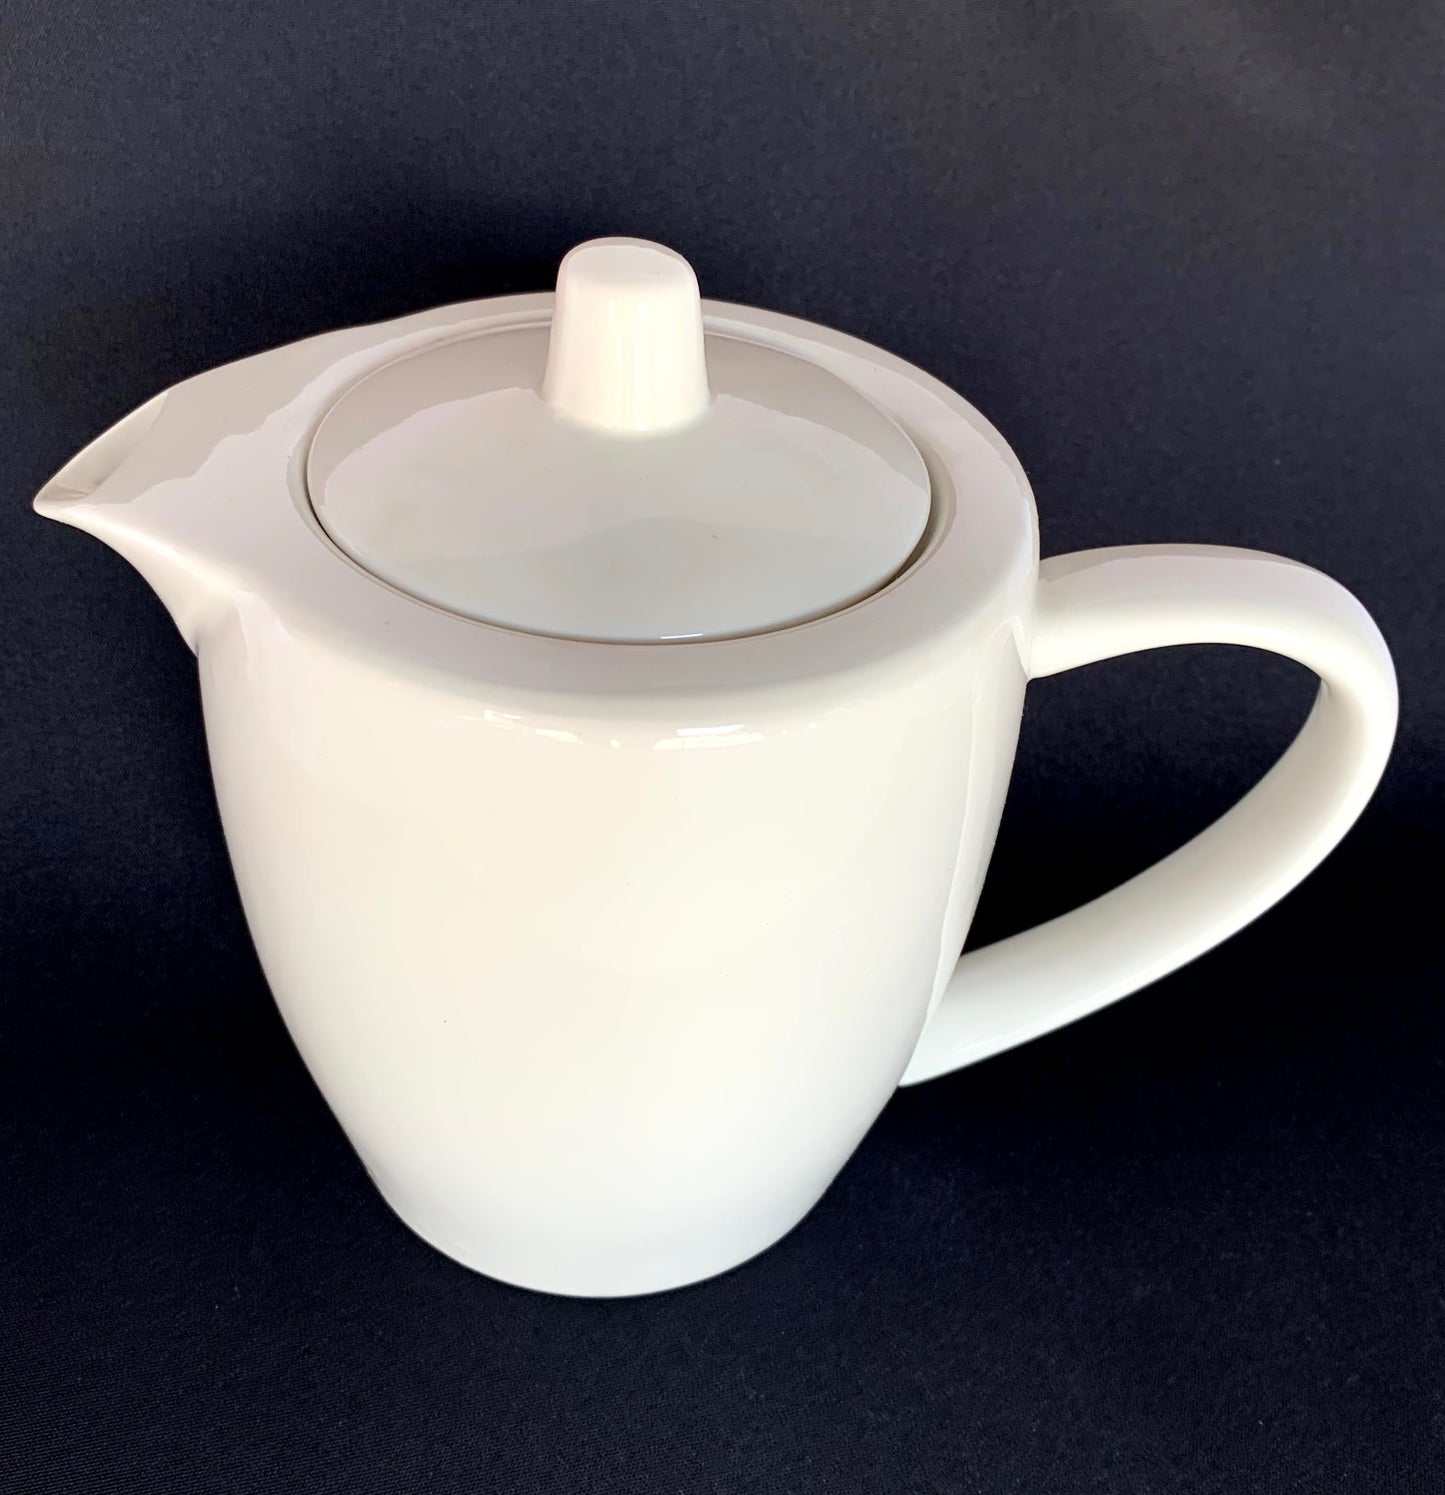 White Ceramic Teapot 1.2Ltr